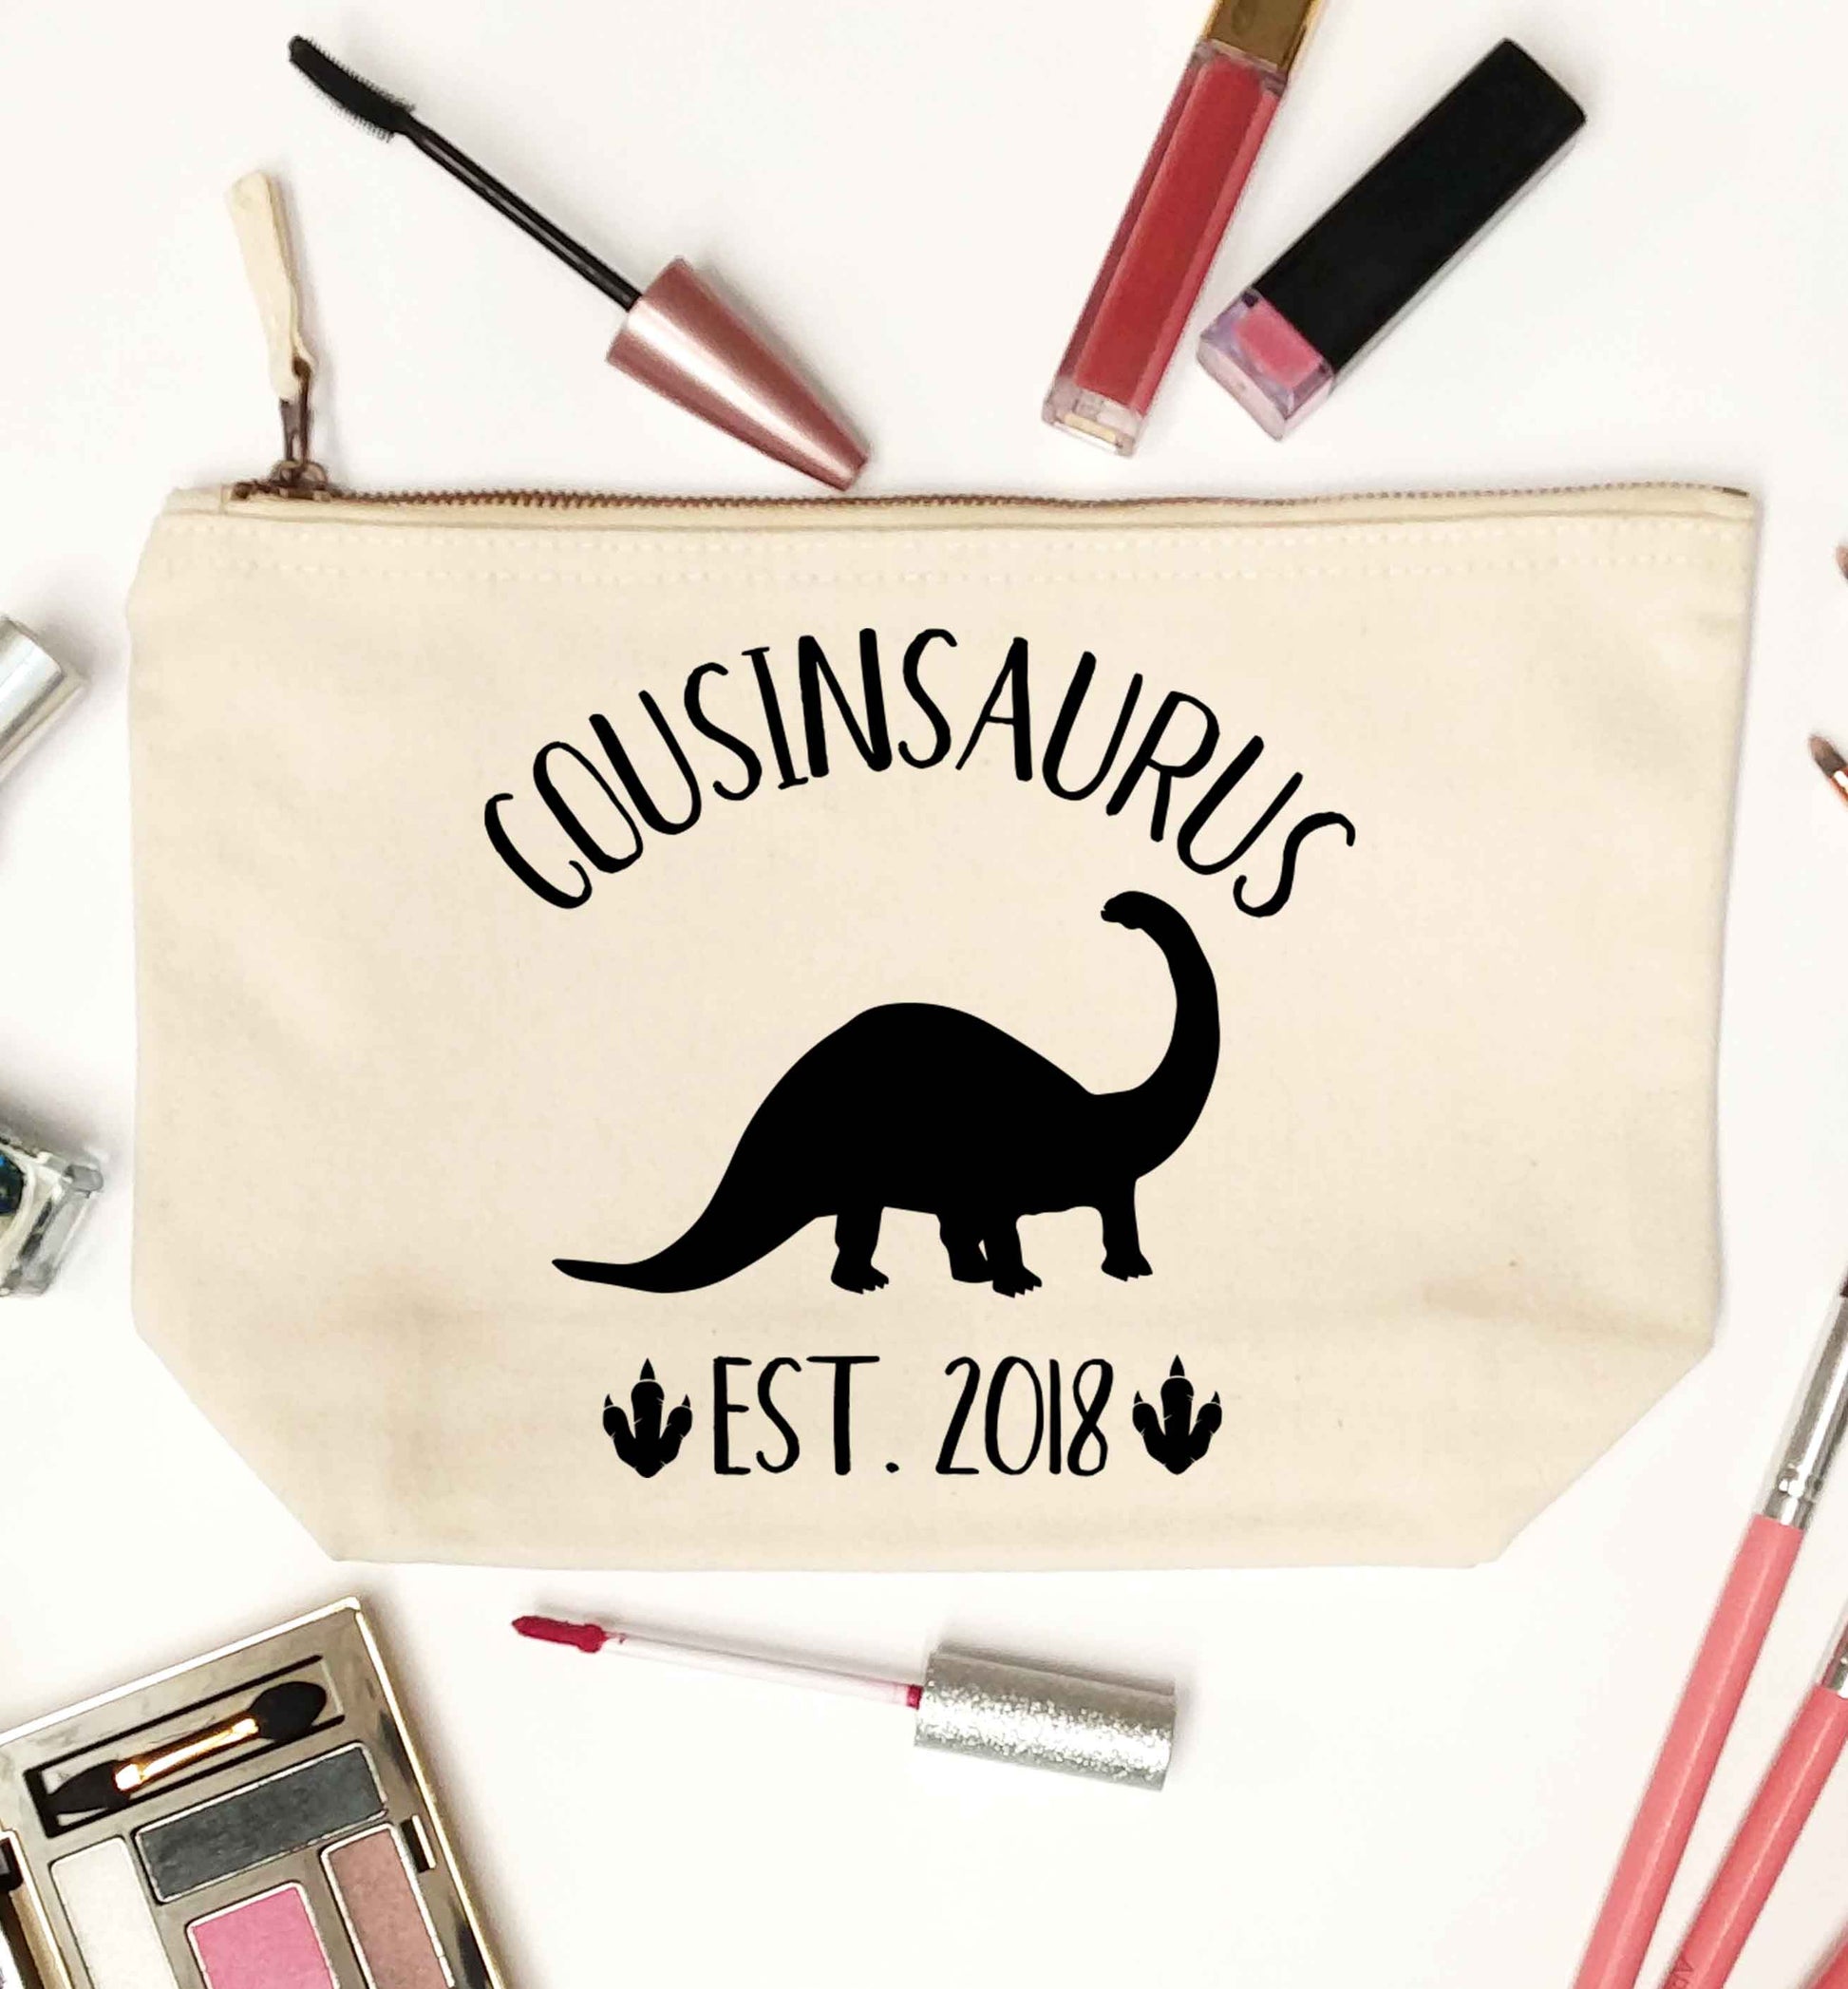 Personalised cousinsaurus since (custom date) natural makeup bag